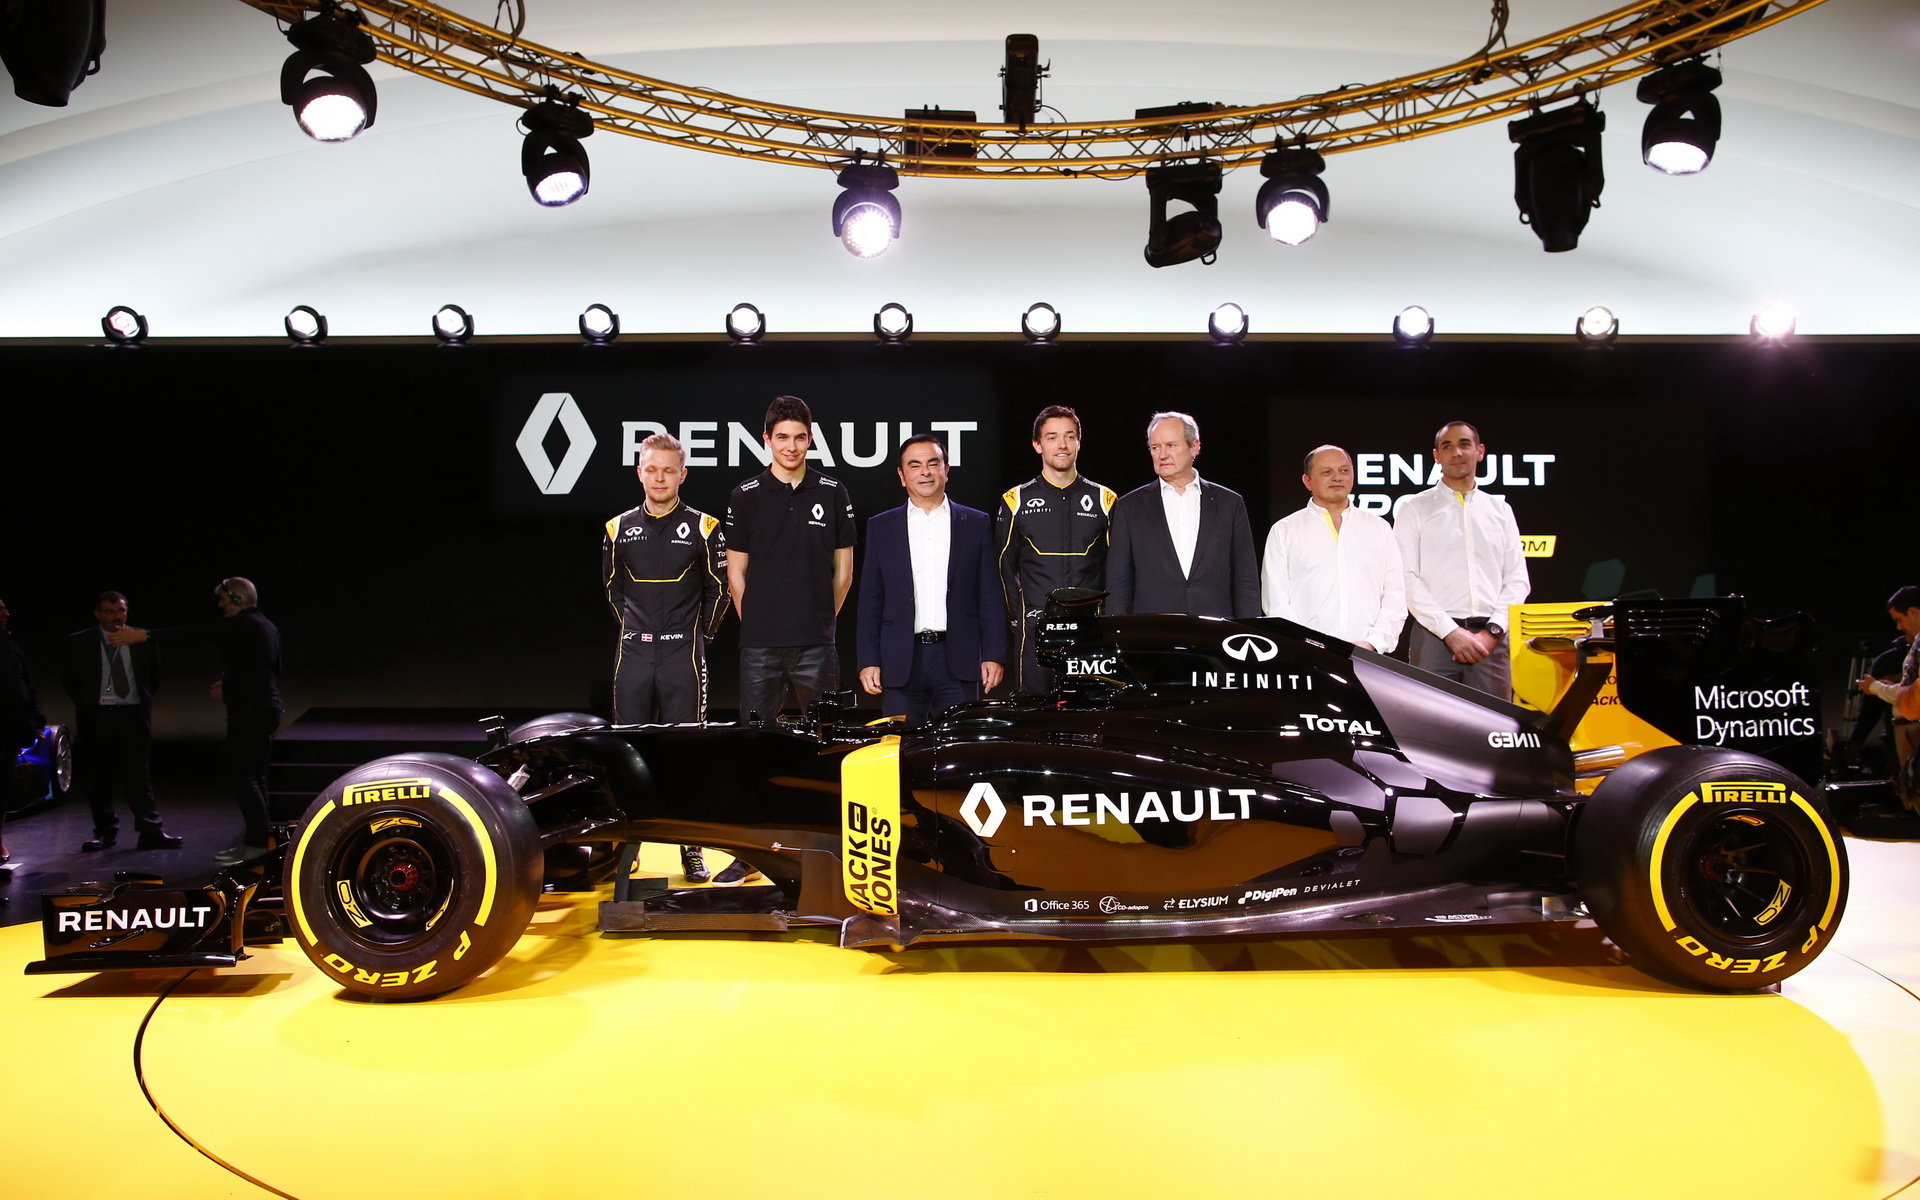 Ocon letos bude reprezentovat dvě značky - Renault a Mercedes